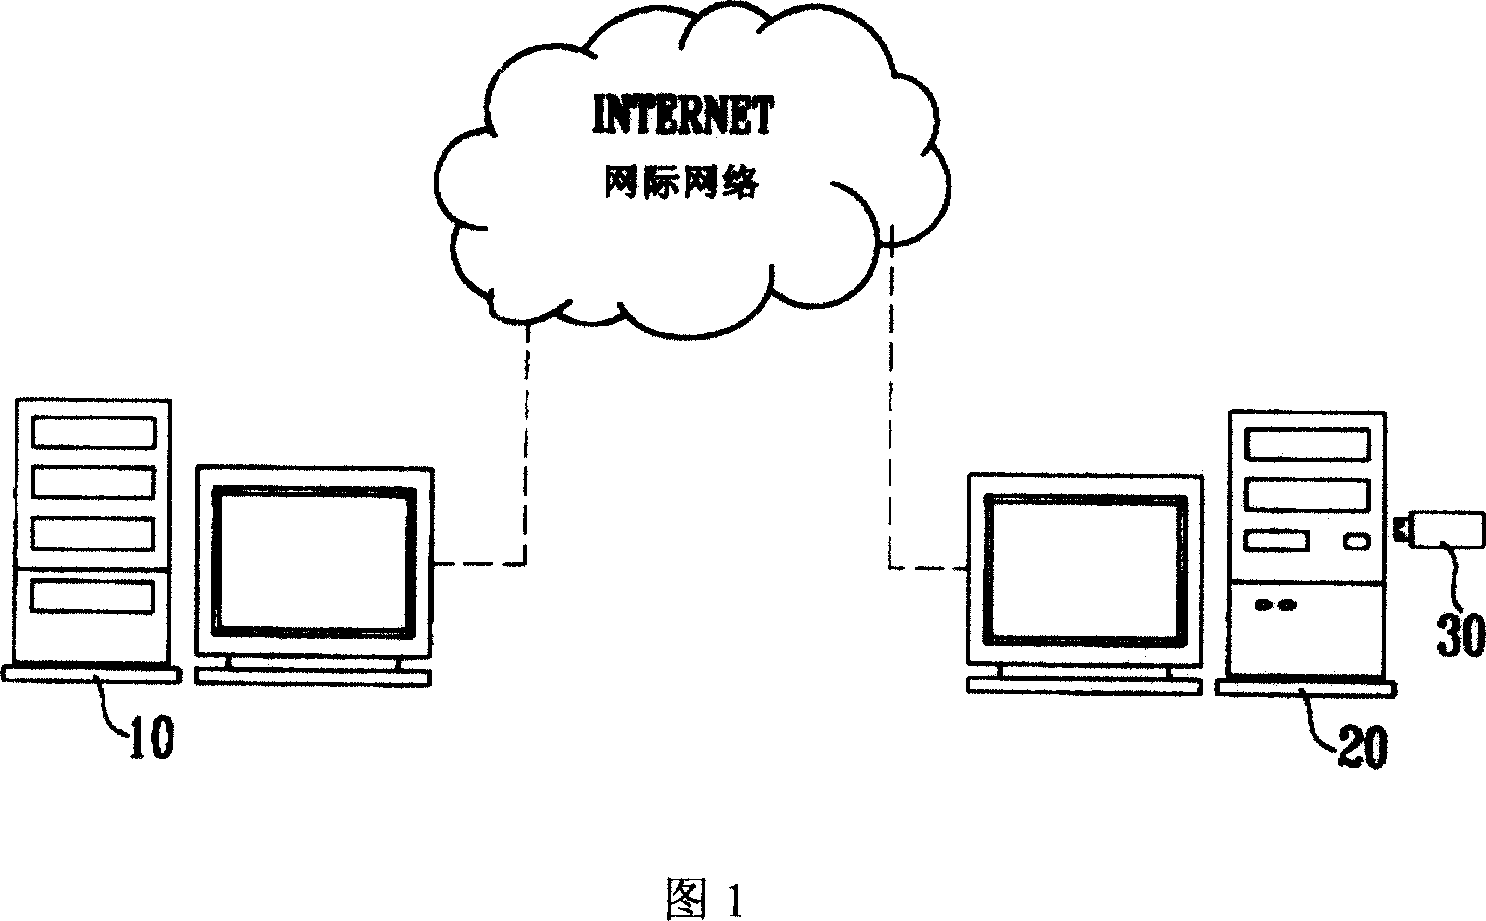 Multimedia transmission method for network teaching